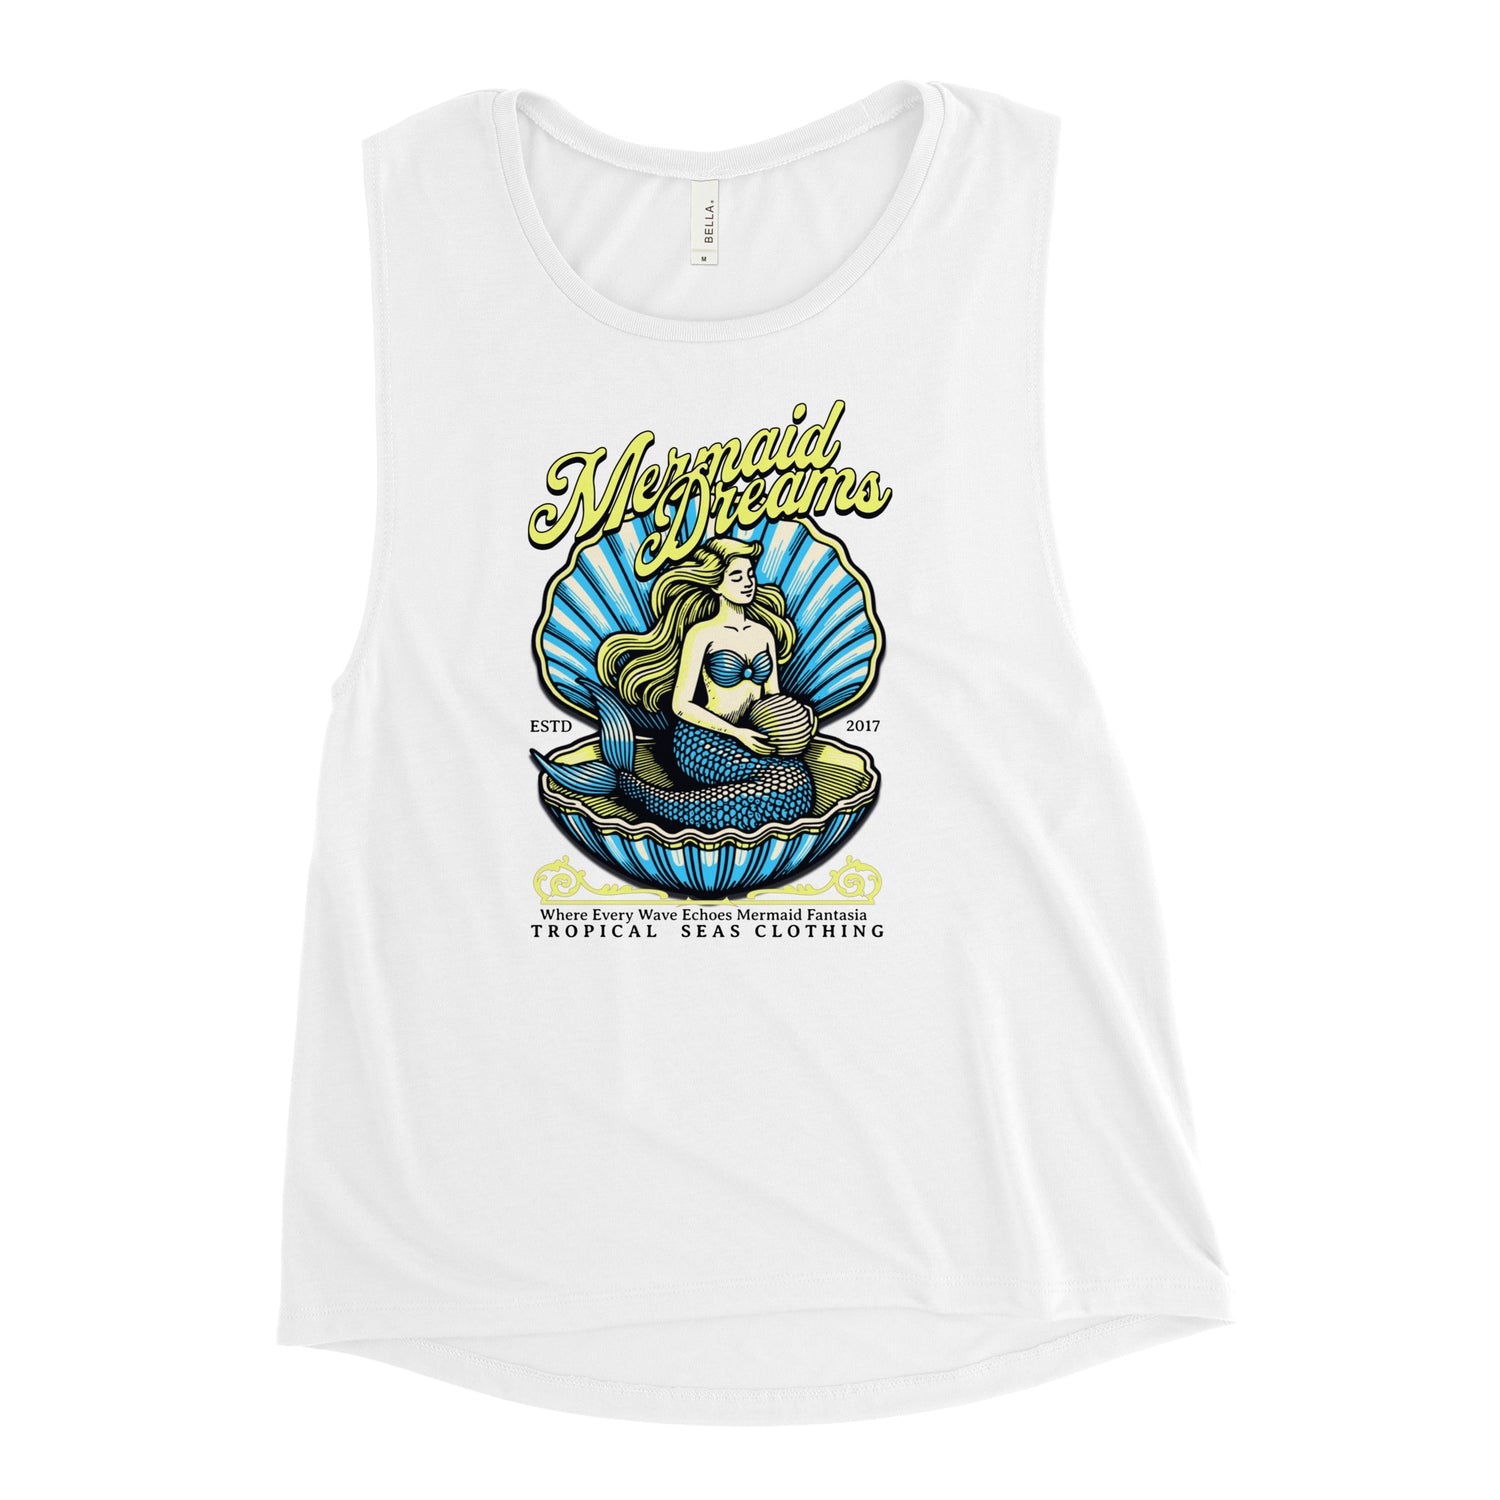 Ladies’ Tropical Mermaid Tank Top - Tropical Seas Clothing 